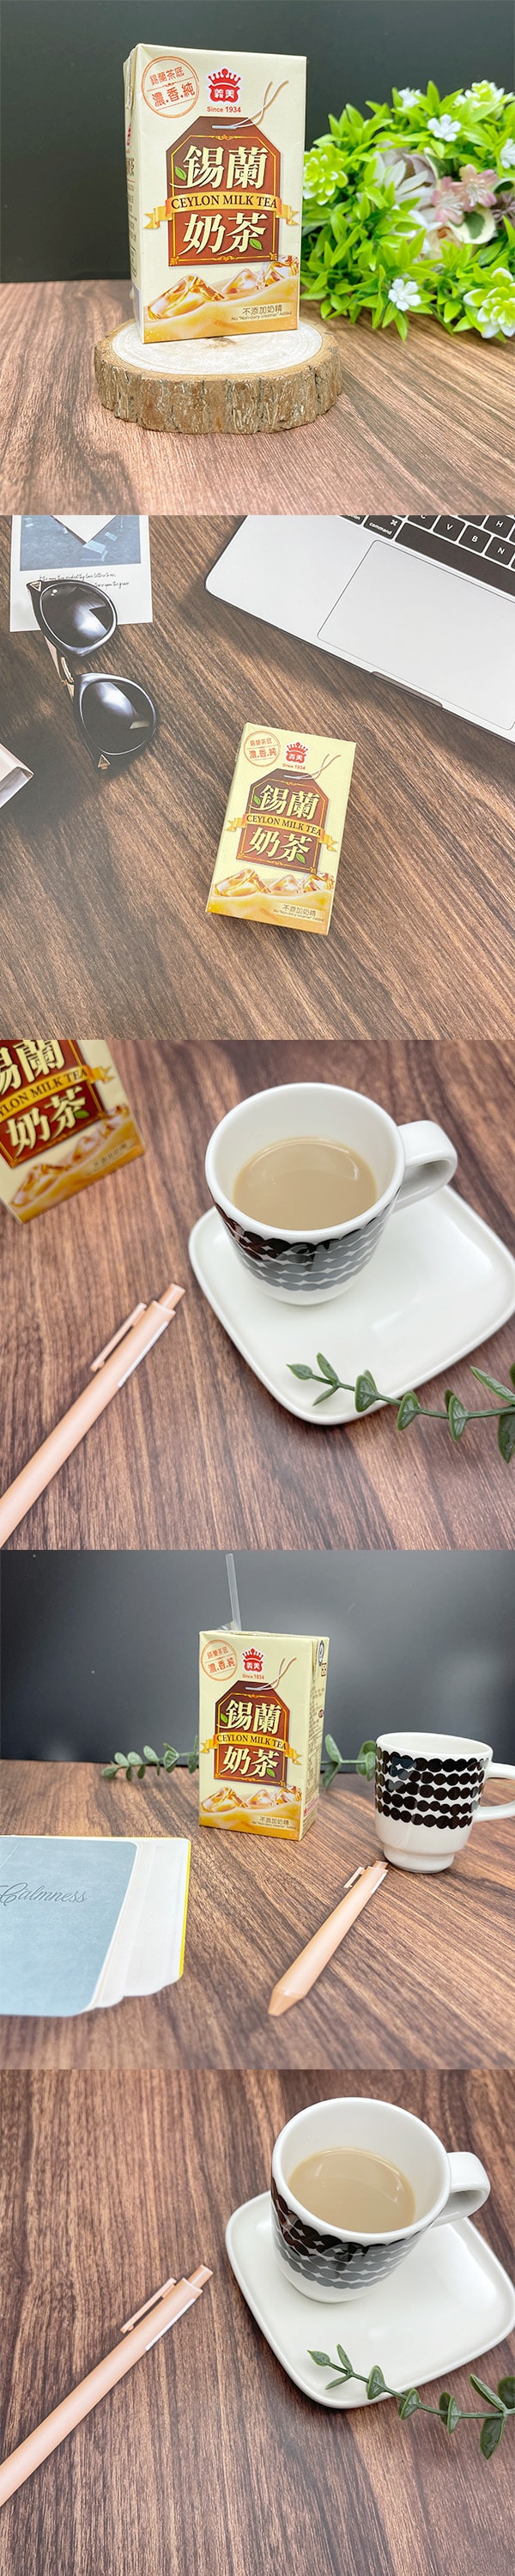 [台湾直邮]义美 锡兰奶茶 250ml(限购3罐)